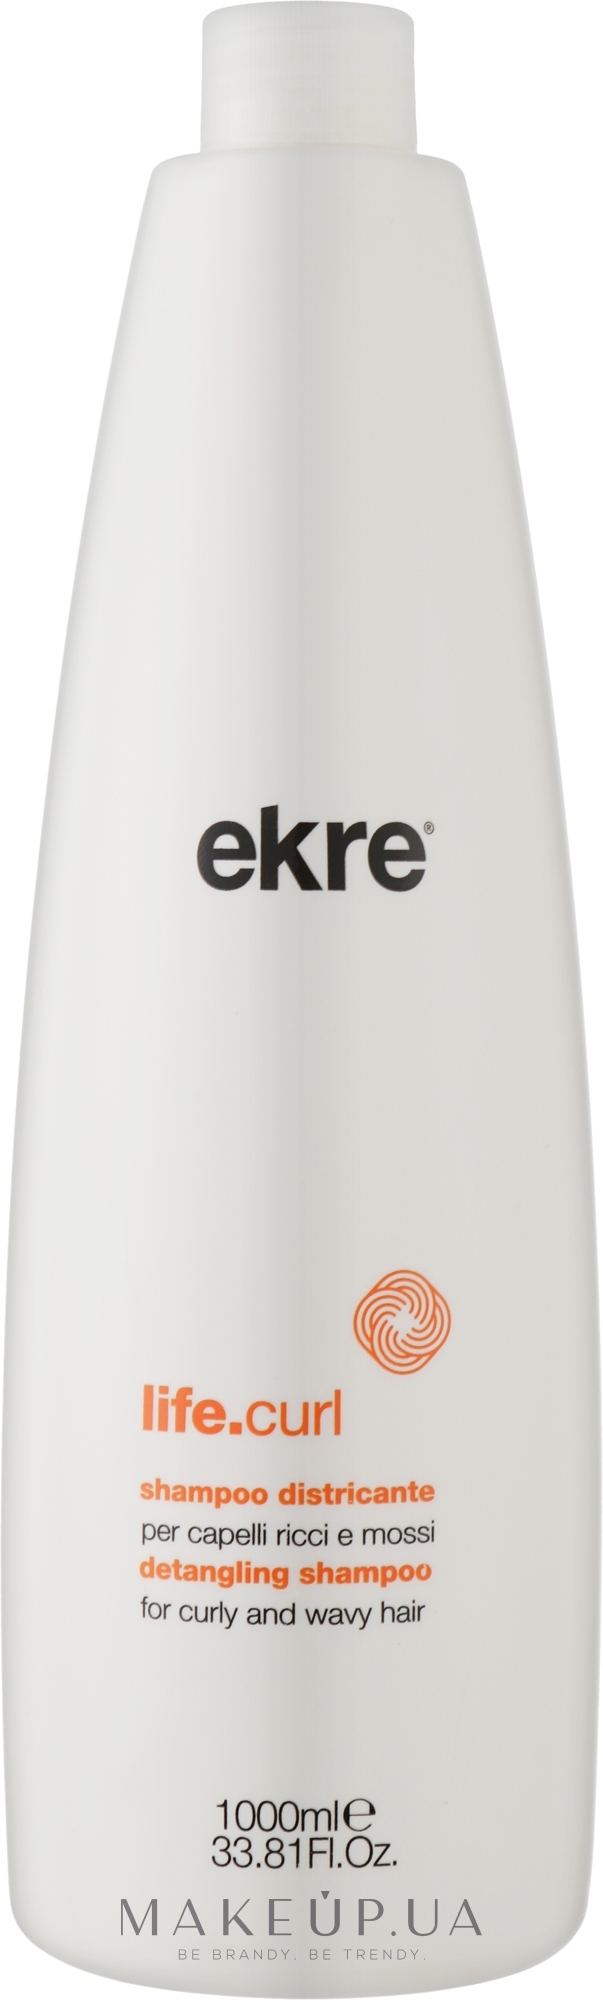 Шампунь для вьющихся и волнистых волос - Ekre Life.Curl Detangling Shampoo — фото 1000ml